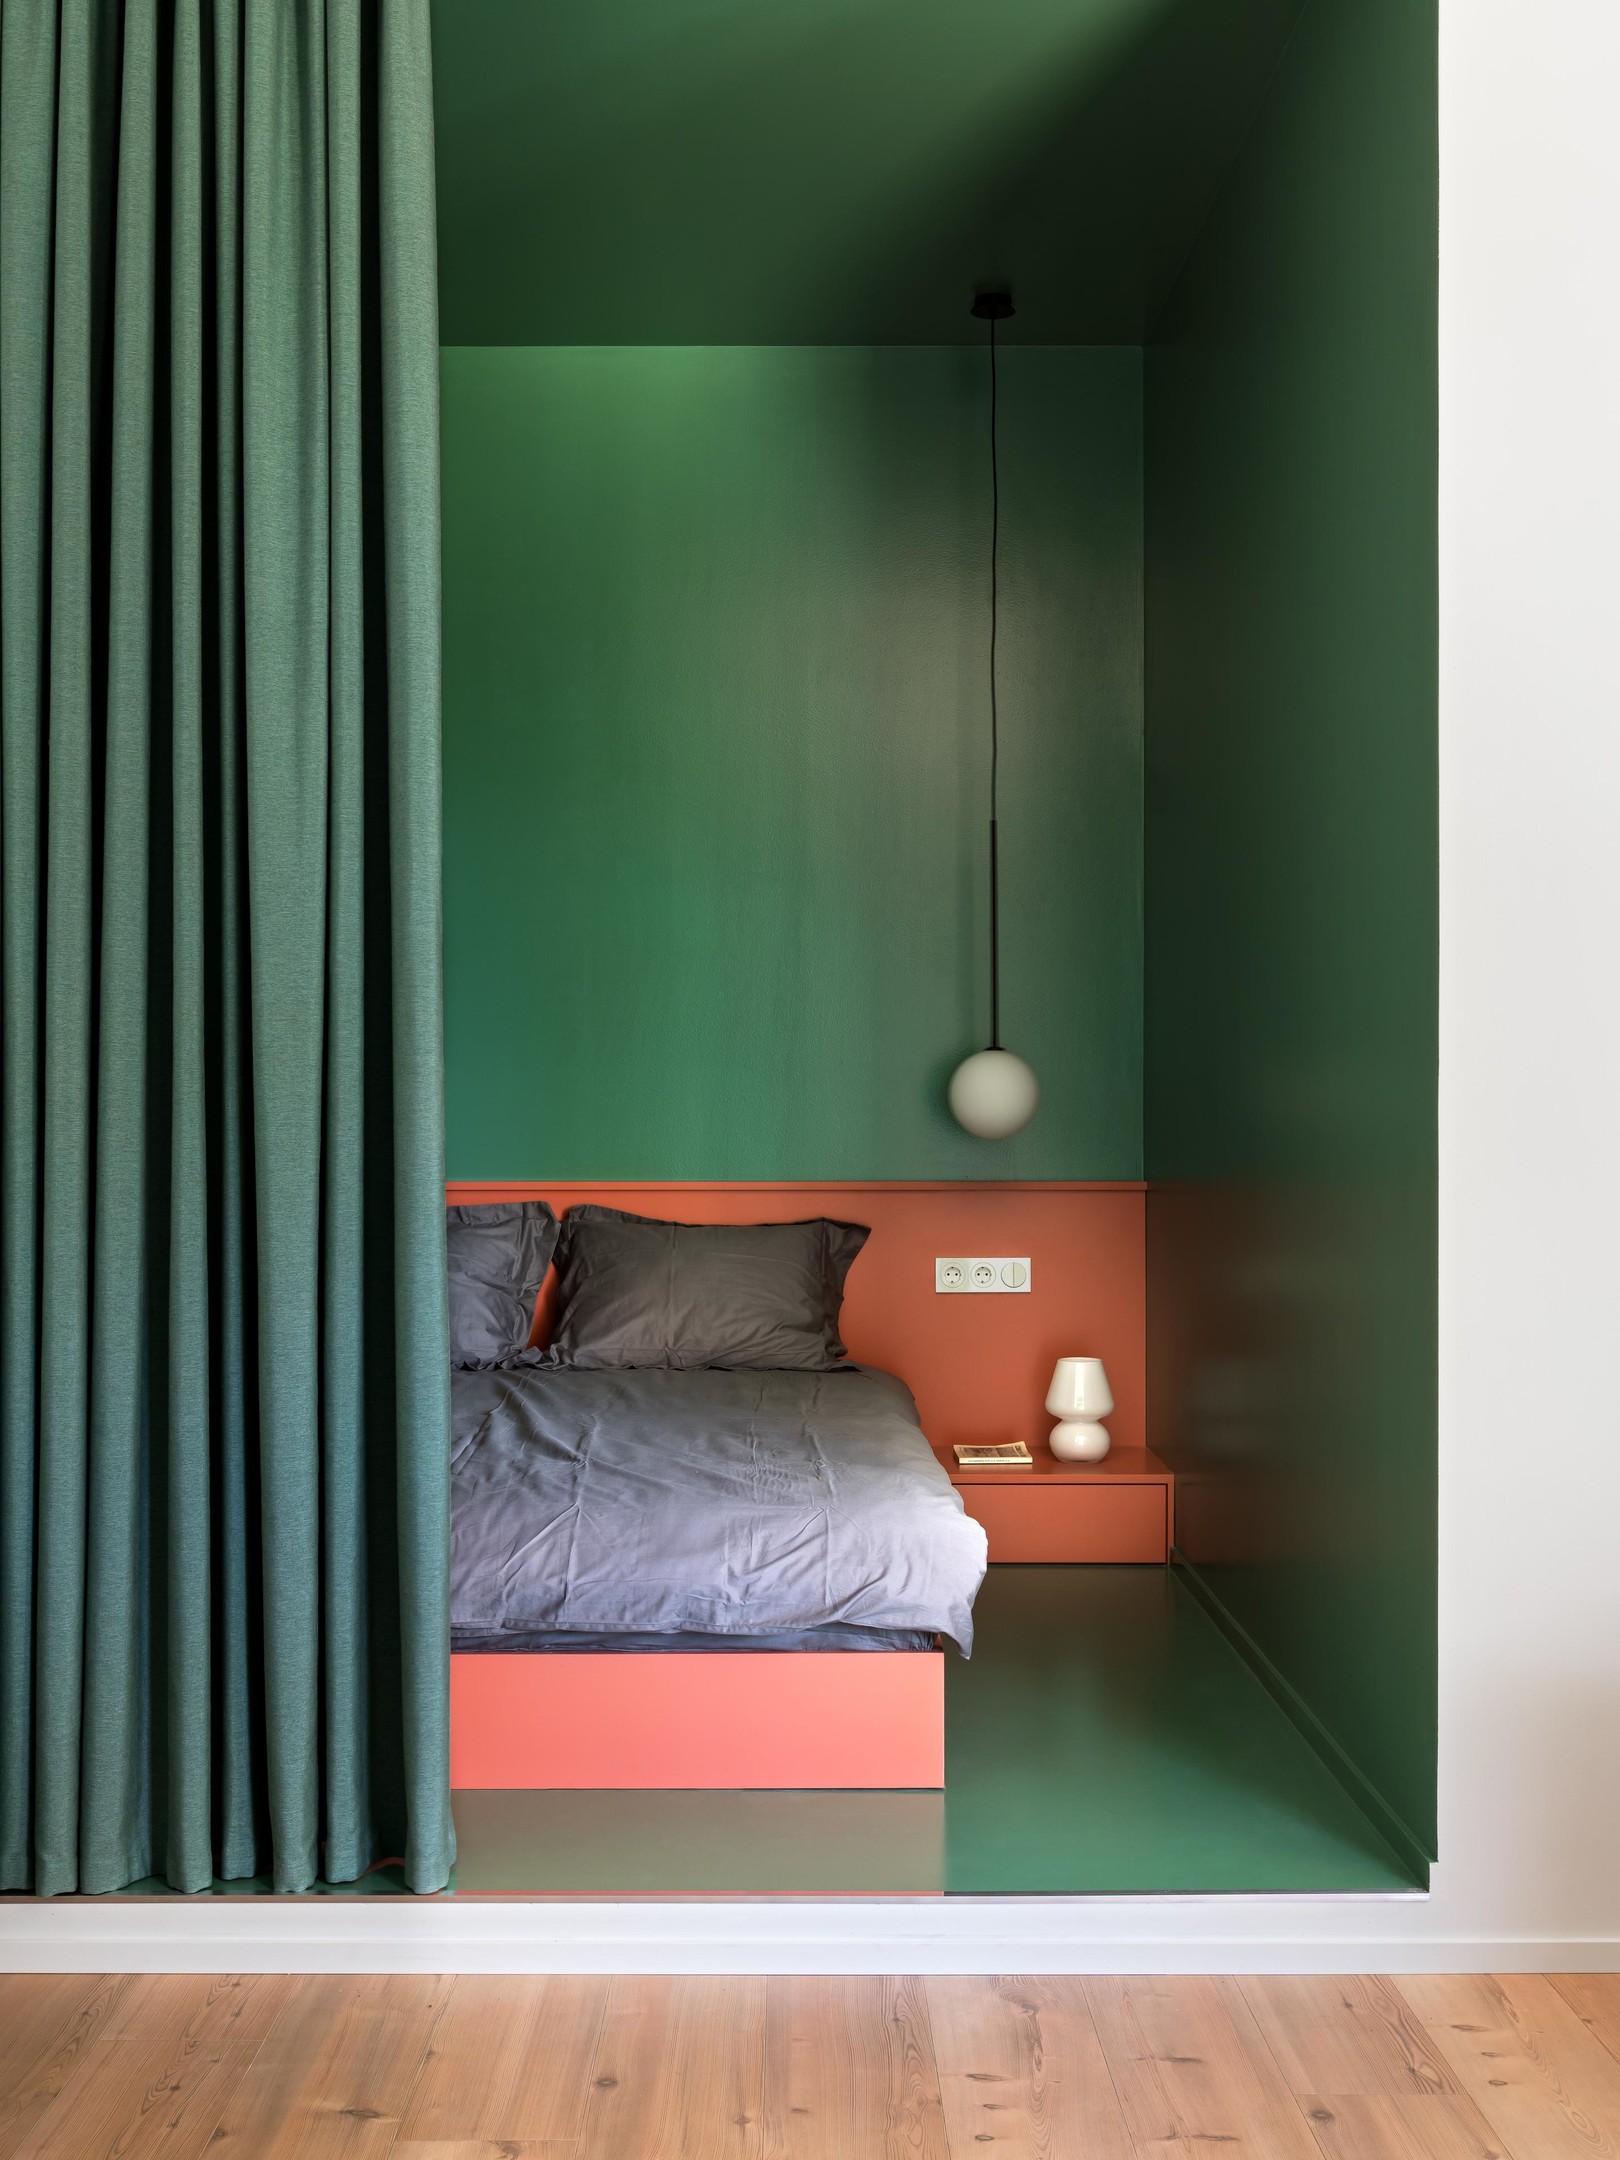 Căn hộ thiết kế bởi VAE Design studio với phòng ngủ ấn tượng, không chỉ nhờ tận dụng hốc tường mà còn sử dụng màu xanh ngọc lục bảo thời thượng. Một chút nhấn nhá từ sắc cam gạch ở khu vực đầu giường cho phòng ngủ nhỏ càng nổi bật.